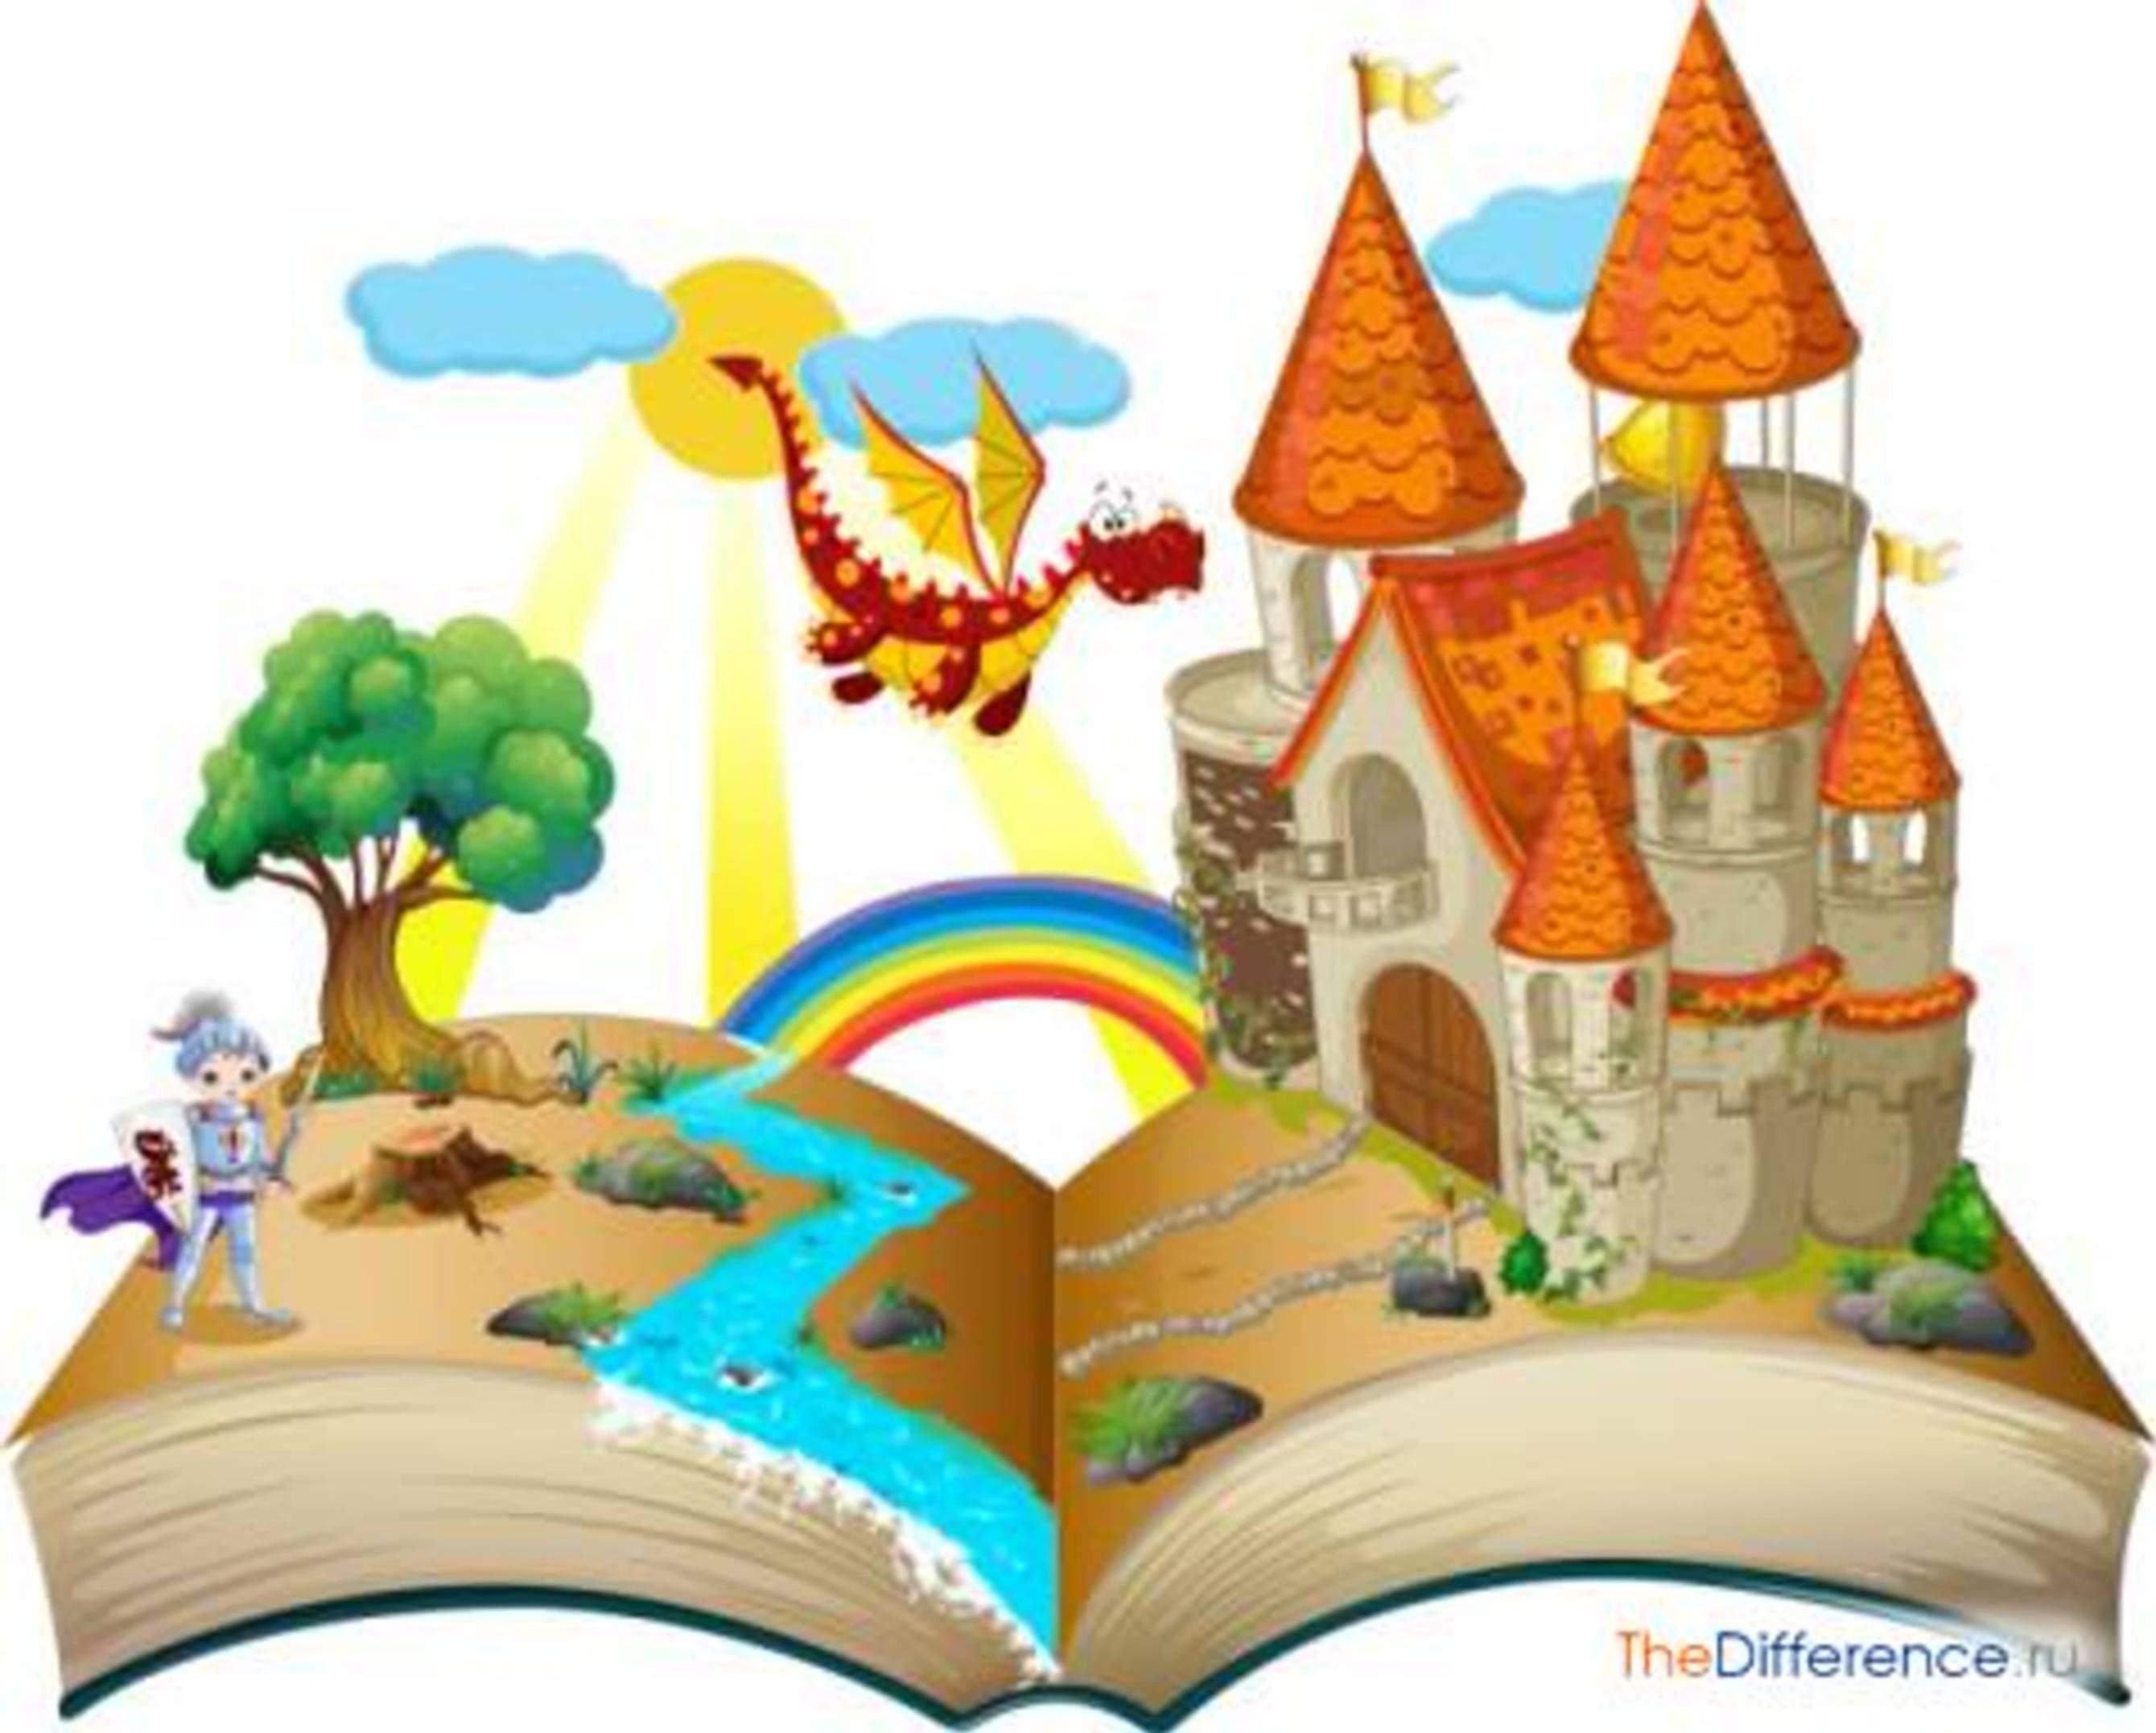 Проект сказкотерапия. Путешествие в сказку. Сказочные путешествия для детей. Путешествие в мир сказок. Путешествие в сказочный мир.